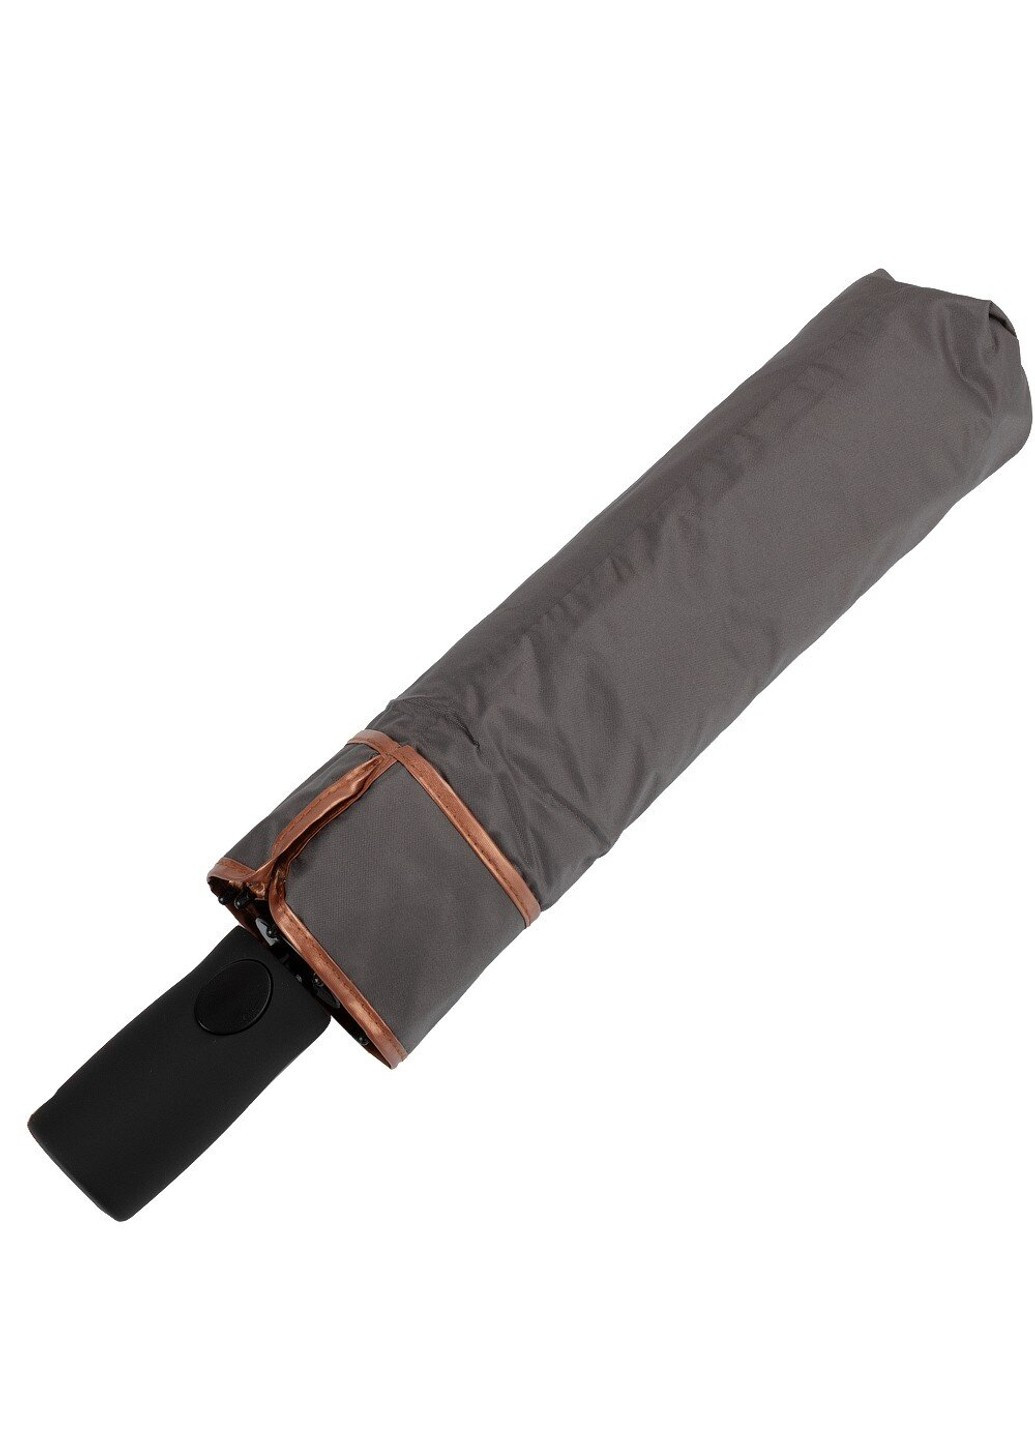 Полуавтоматический женский зонтик 5529-grey FARE (262976089)